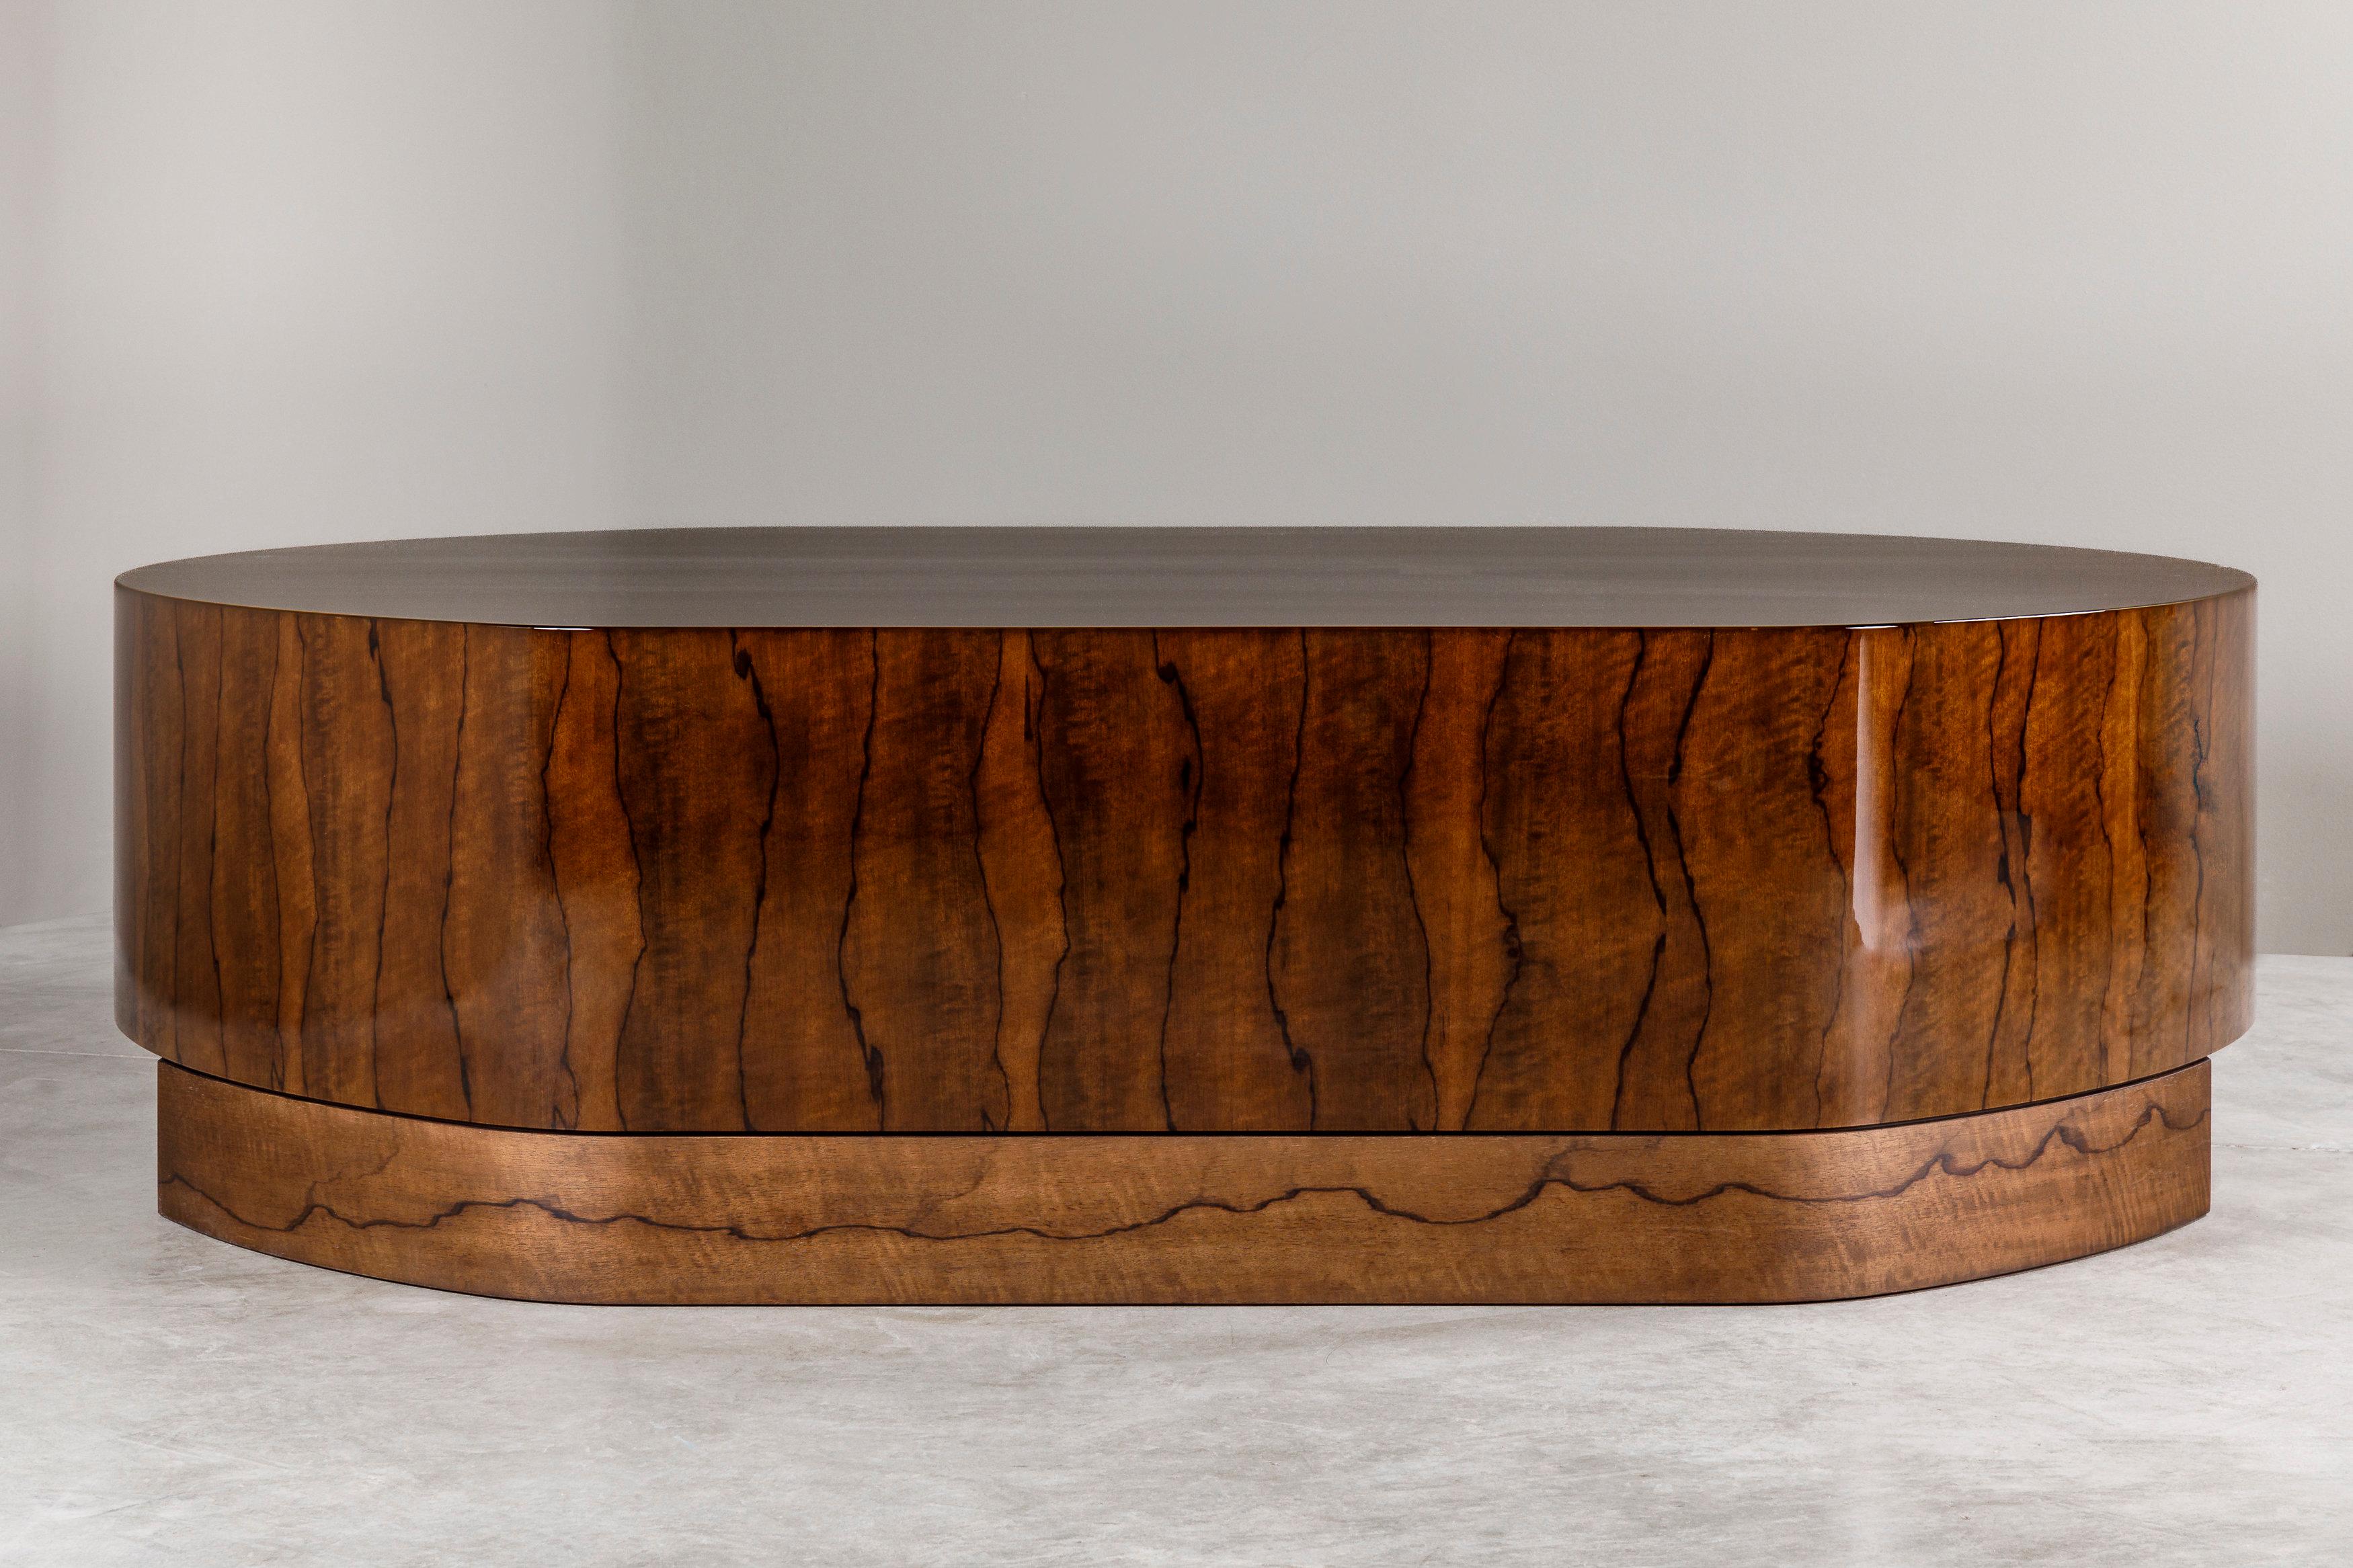 La table basse ECU, créée en 2023 par l'Atelier Linné, est fabriquée à partir d'un bois africain appelé Limba Superba, reconnaissable à ses veines sombres sur fond blond. La table a une forme oblongue et repose sur une base solide encastrée.